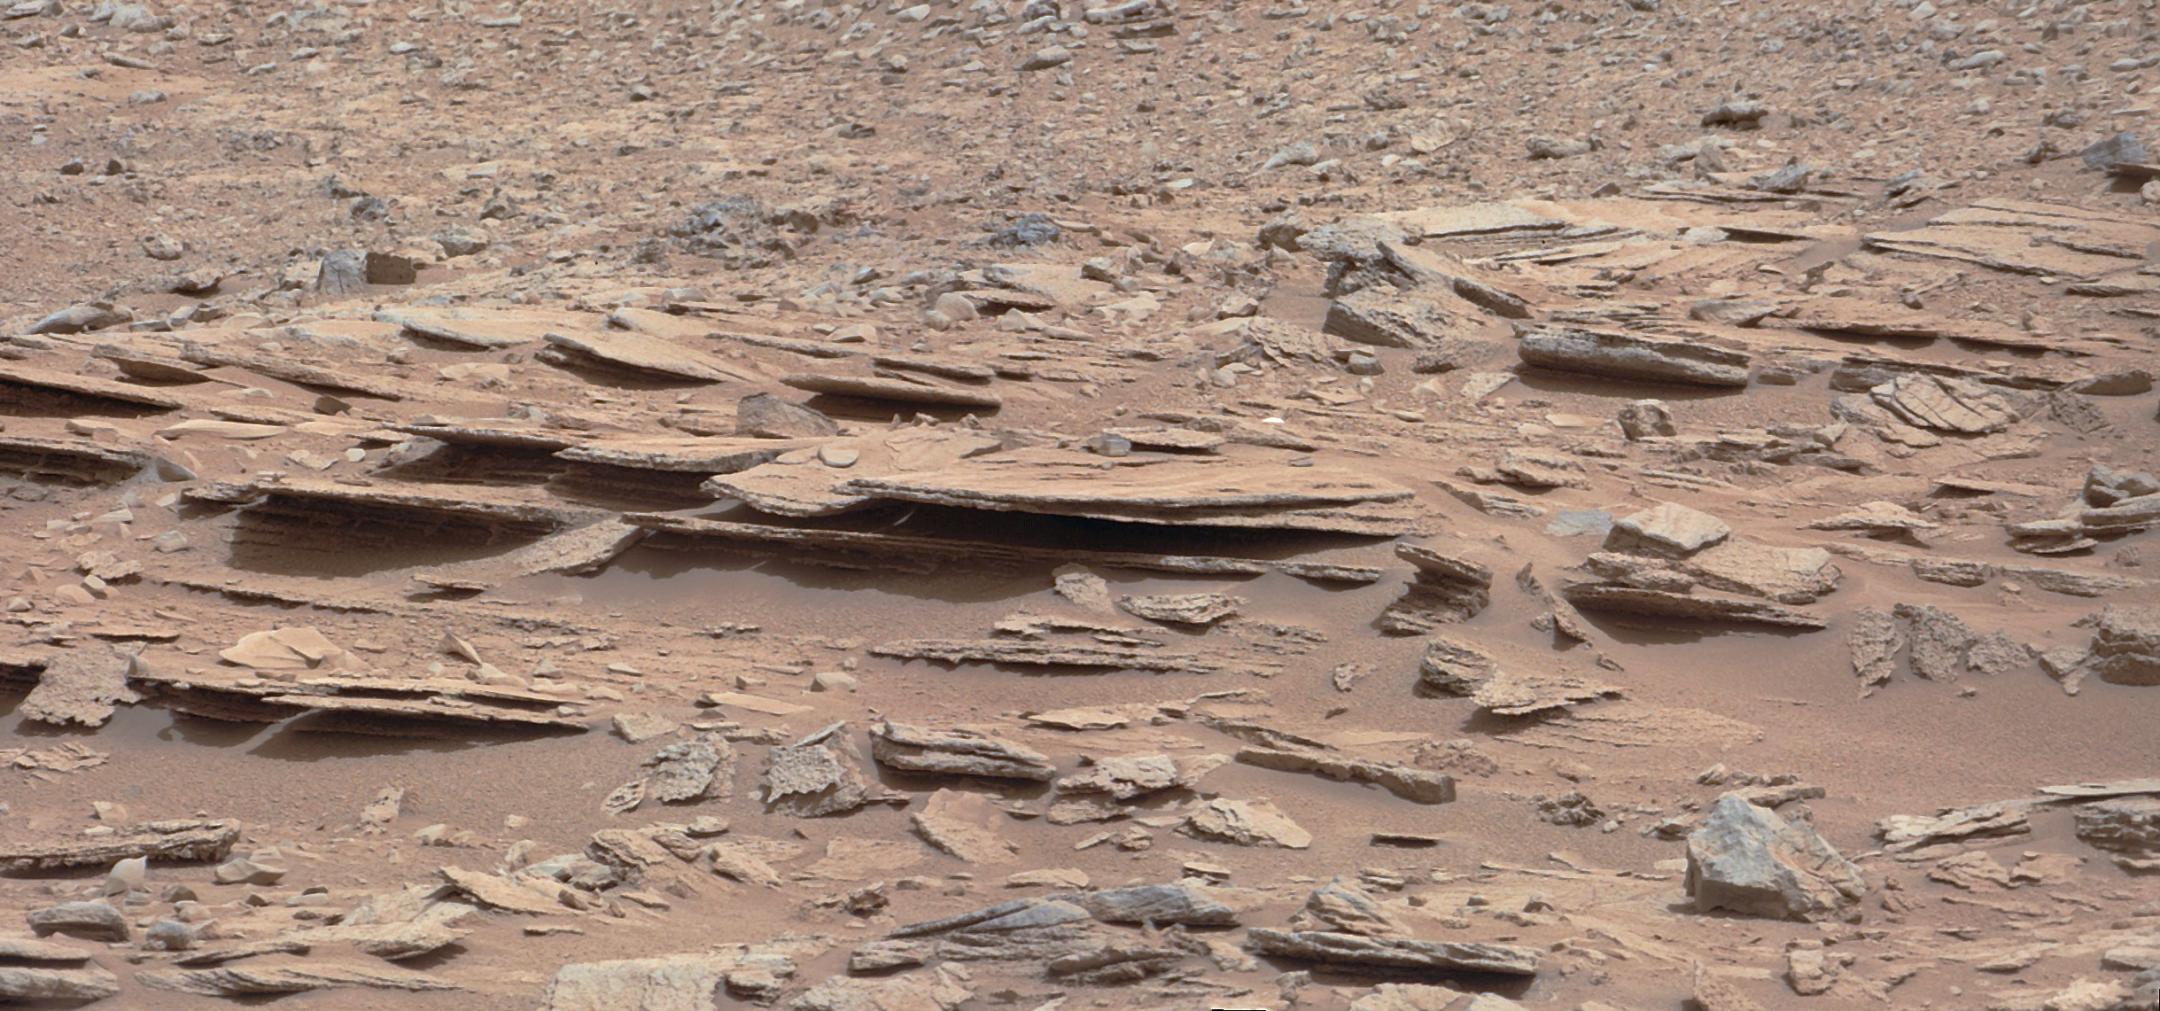 Vue d’un affleurement rocheux localisé sur le site de Glenelg sur la planète Mars